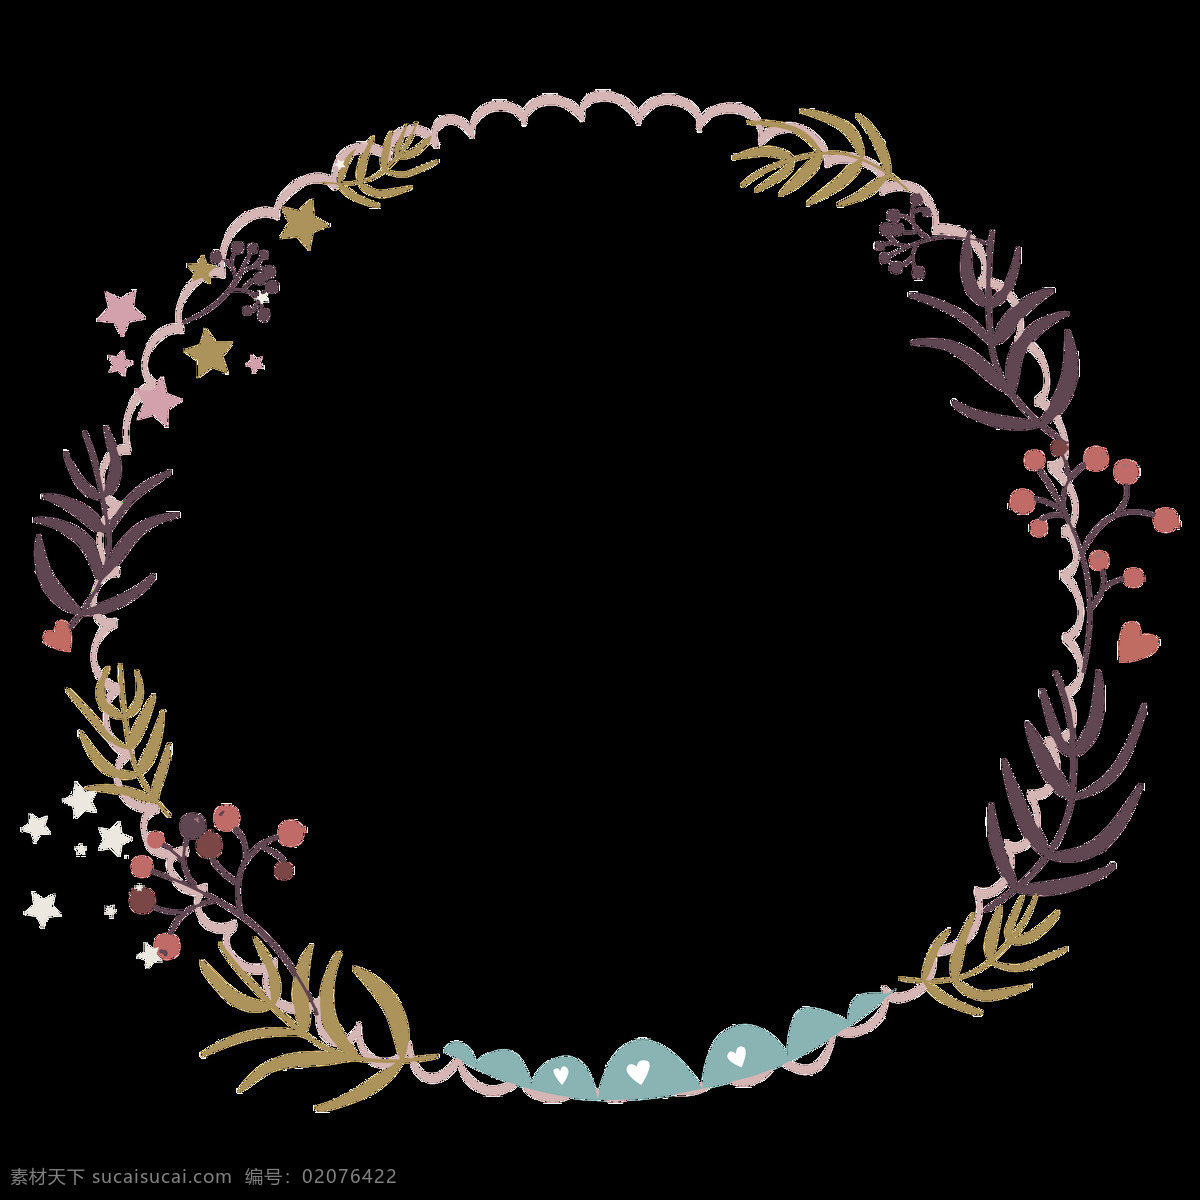 婚礼 贺卡 元素 卡通 透明 花环 抠图专用 装饰 设计素材